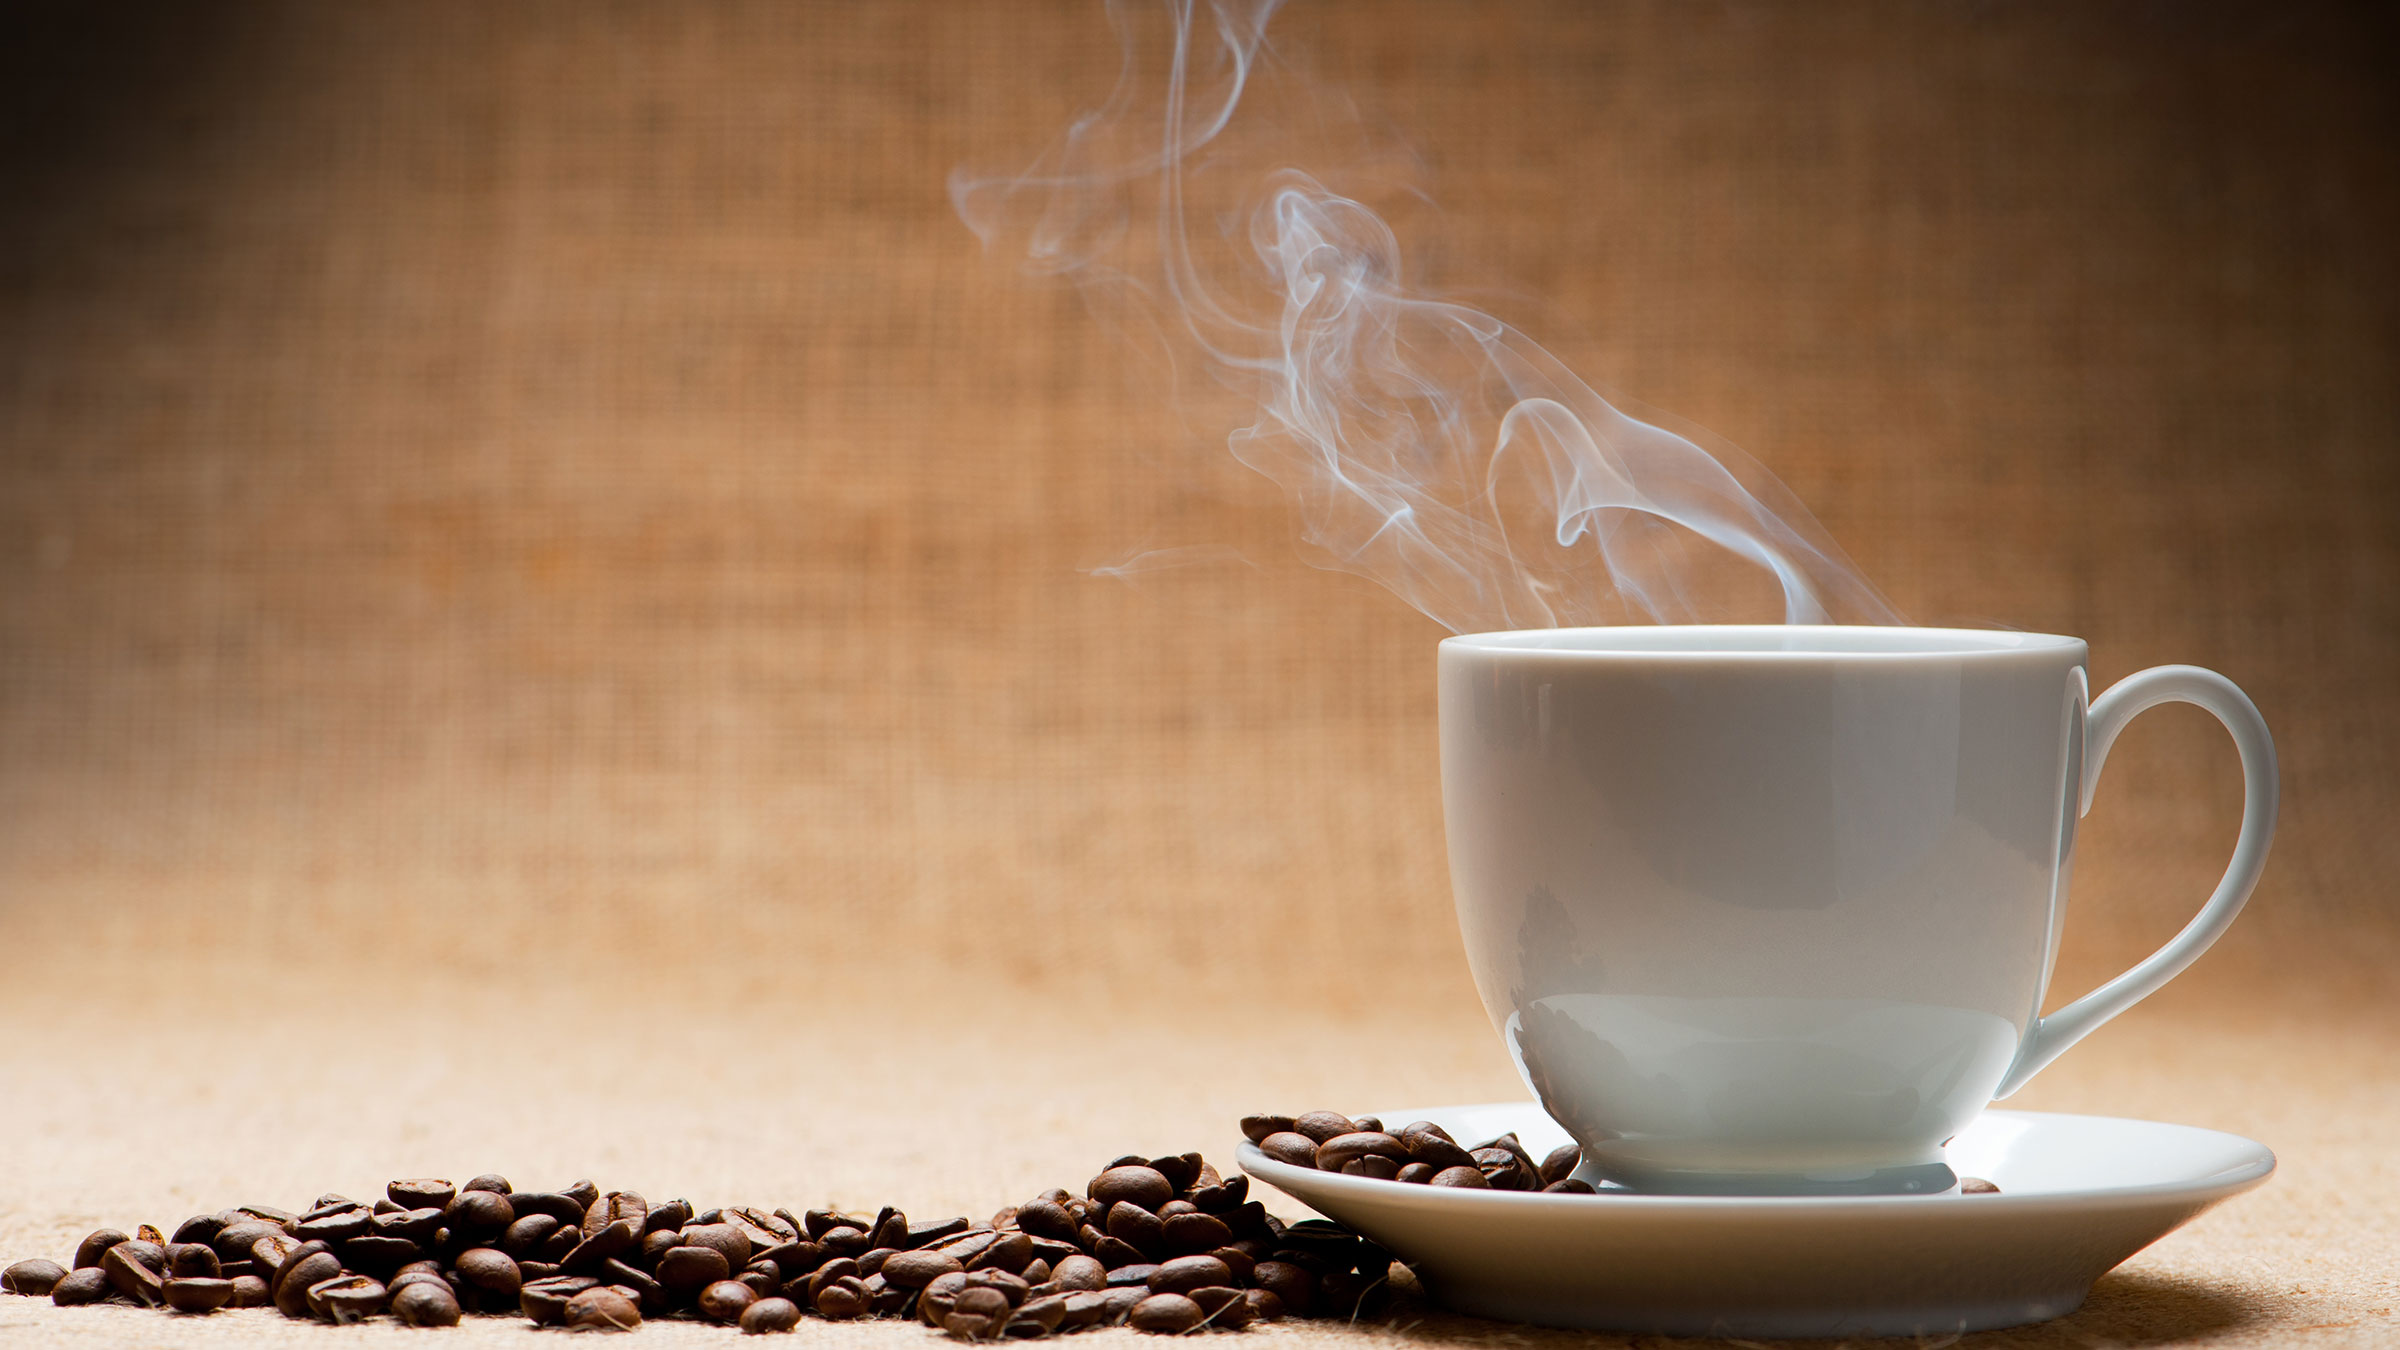 Tomar de dos a tres tazas de café al día podría alargar la vida y prevenir  males cardíacos, señala estudio, Salud, La Revista